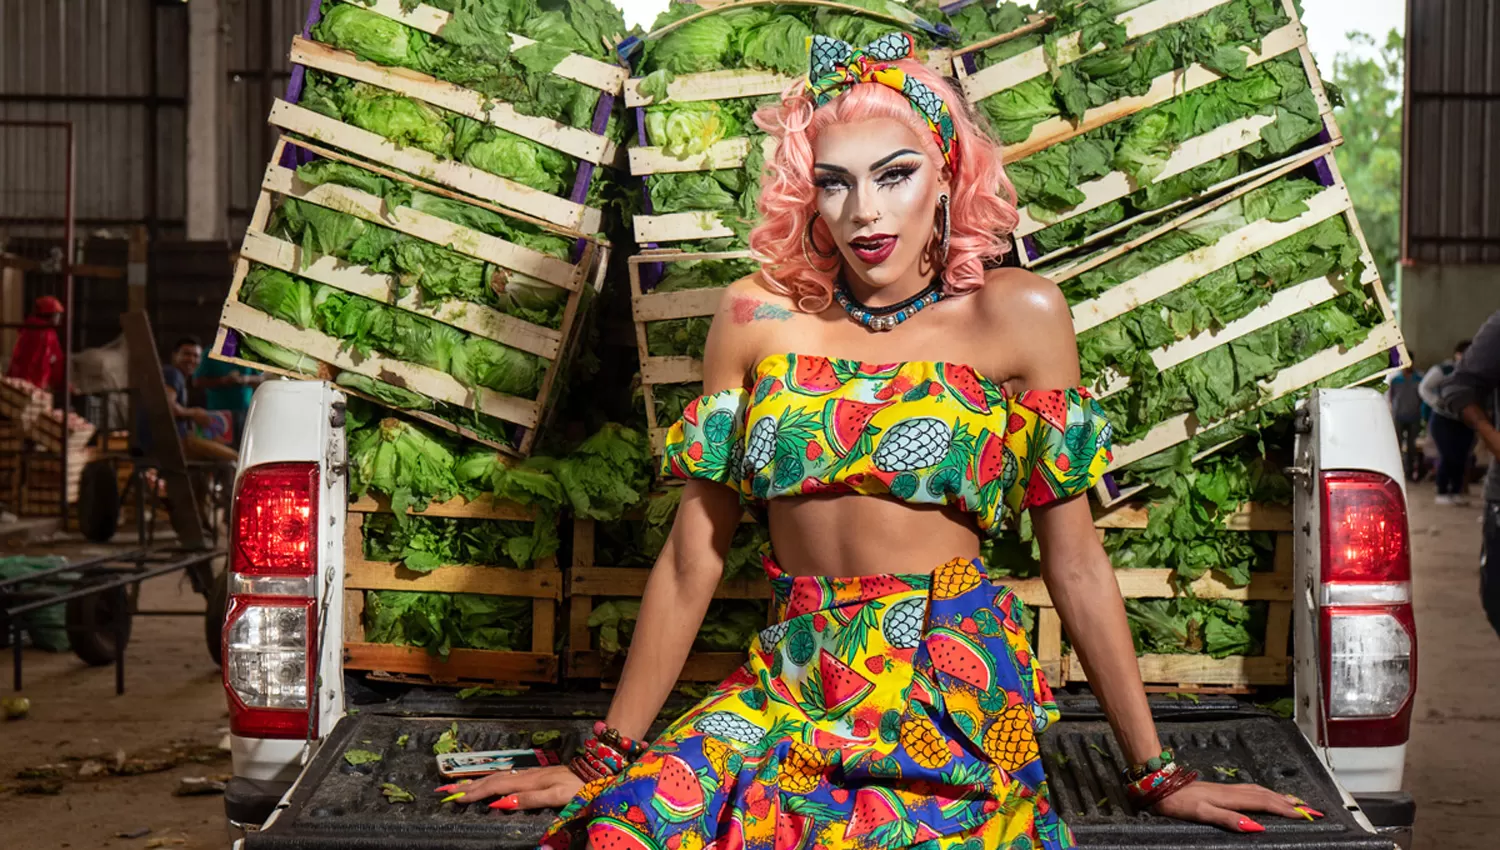 La artista drag queen Molotok posó delante de cajones de lechugas en una sesión de fotos colorida en el Mercofrut. 